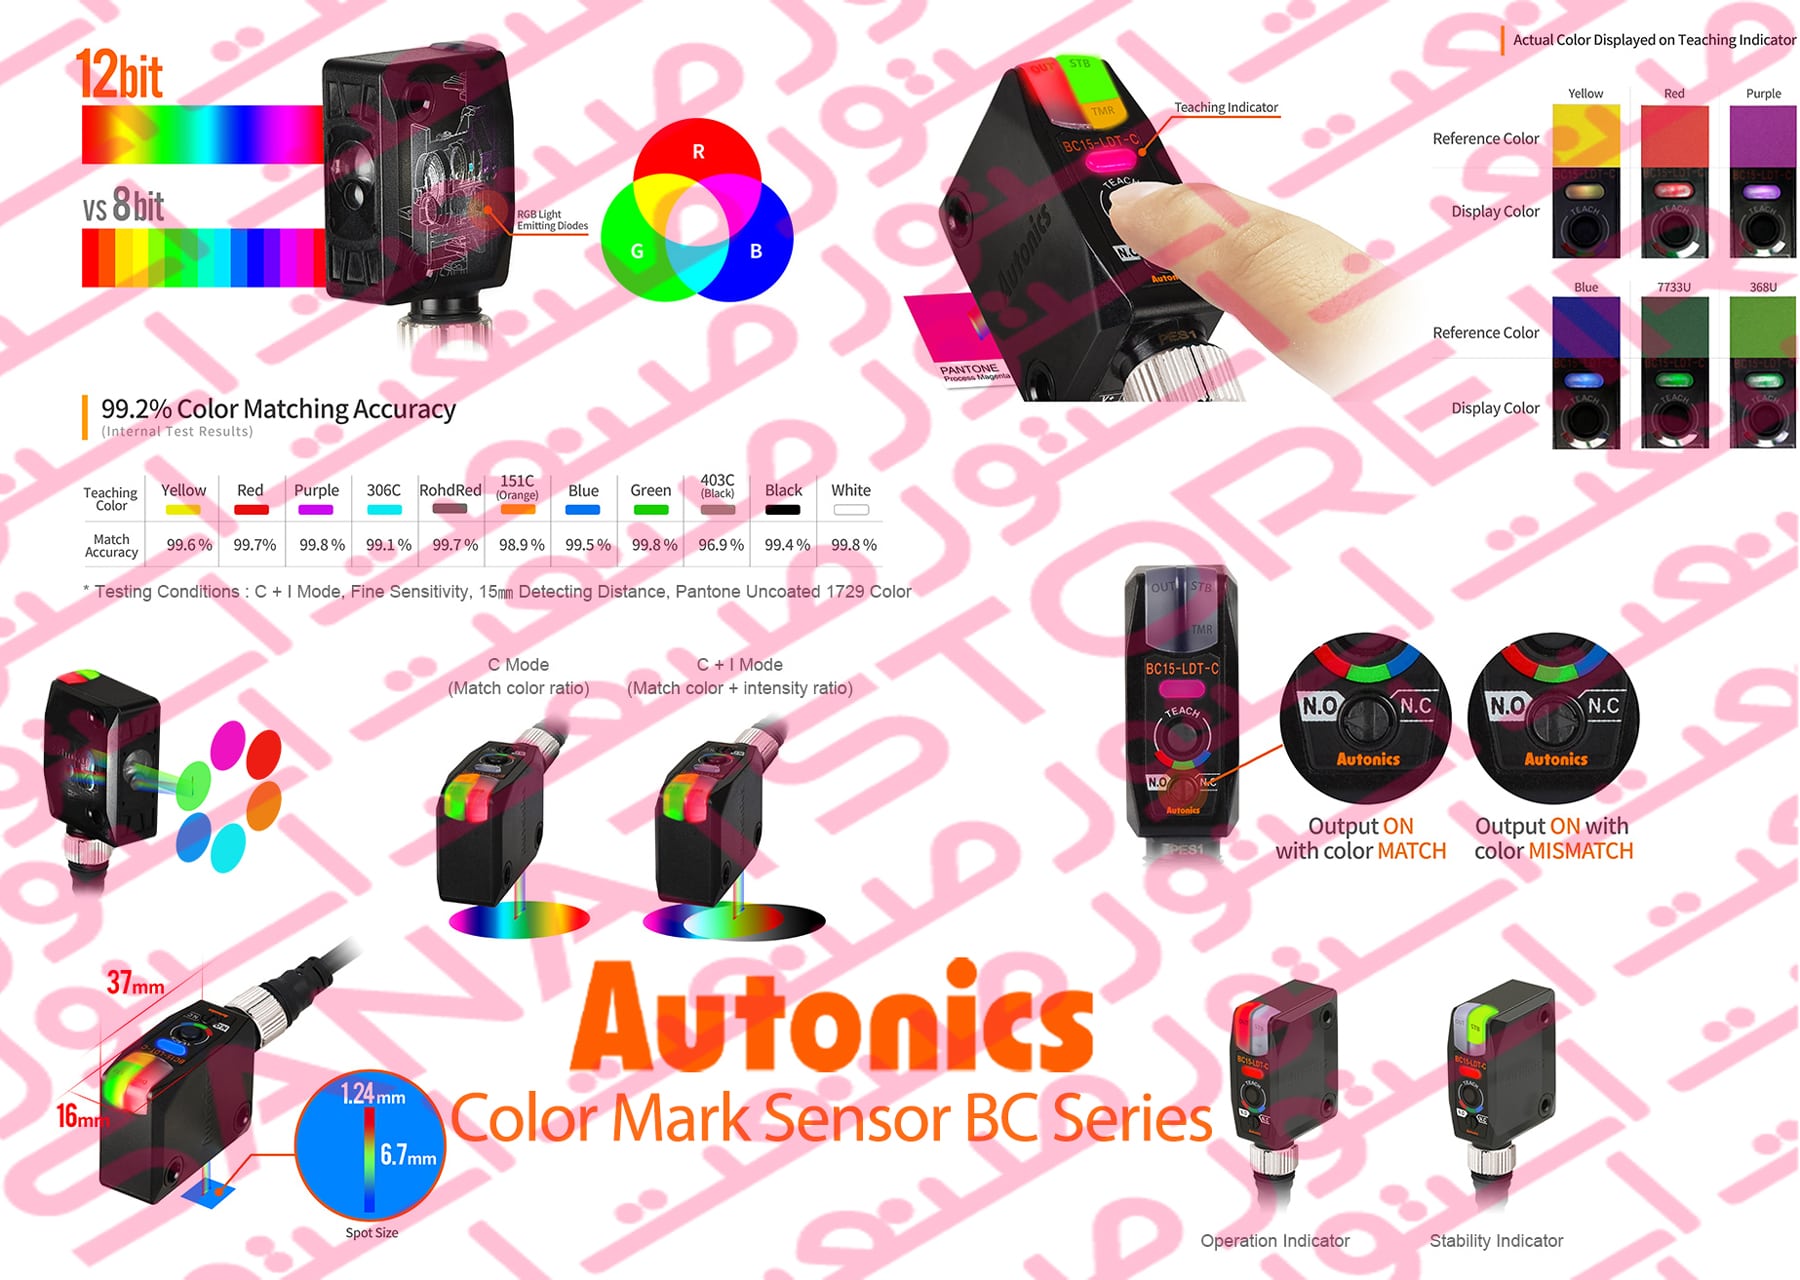 Autonics Color Mark Sensor BC Series